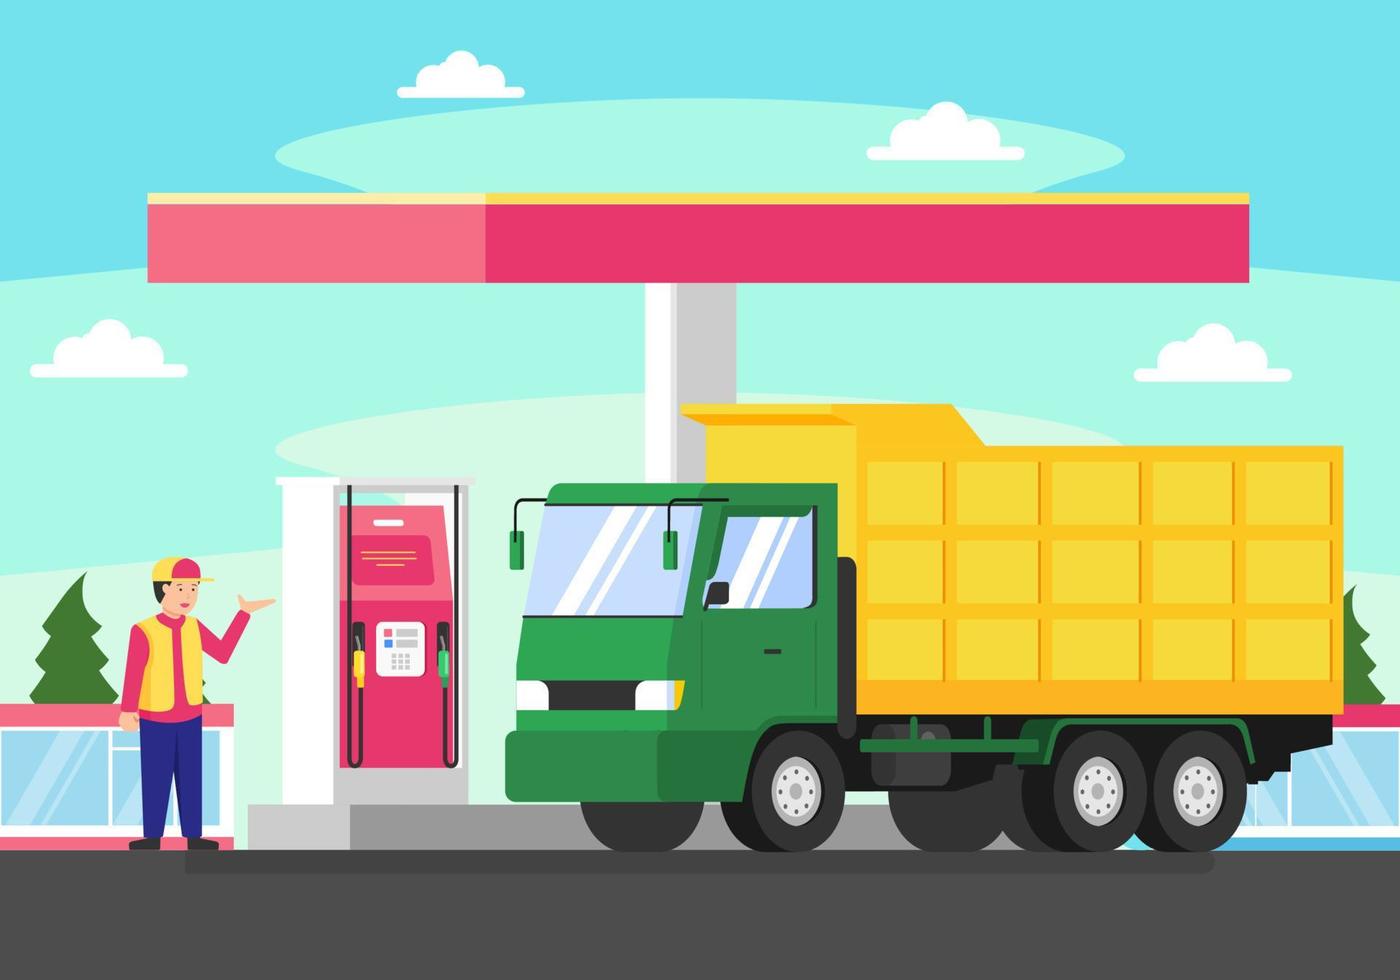 illustrazione vettoriale camion di rifornimento sulla stazione di servizio. l'uomo riempie il suo camion di carburante per un lungo viaggio. rifornimento di camion verde e giallo per riempire il serbatoio con diesel.